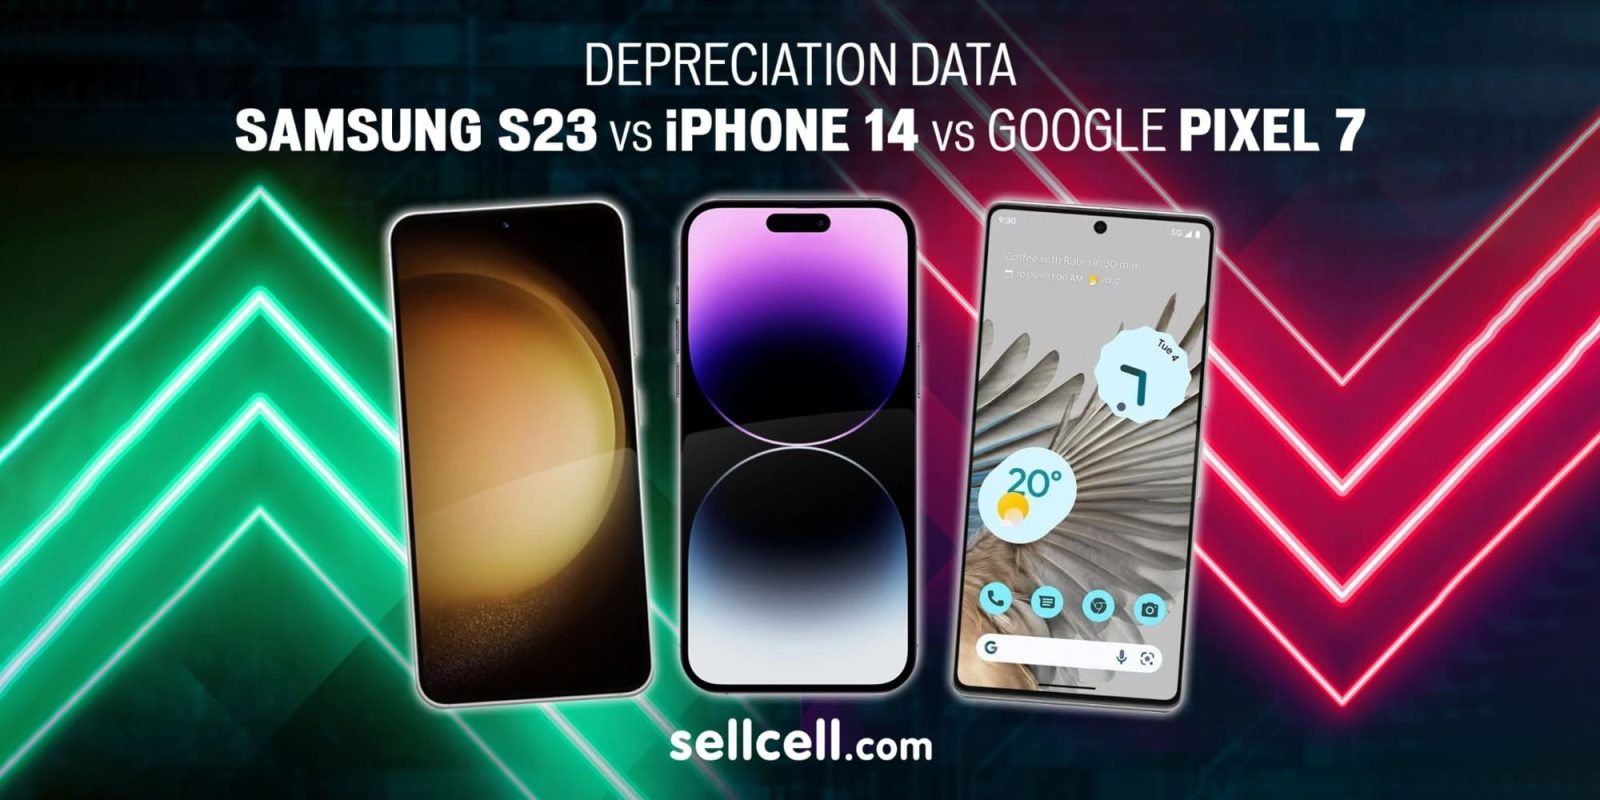 iPhone 14 depreciation data